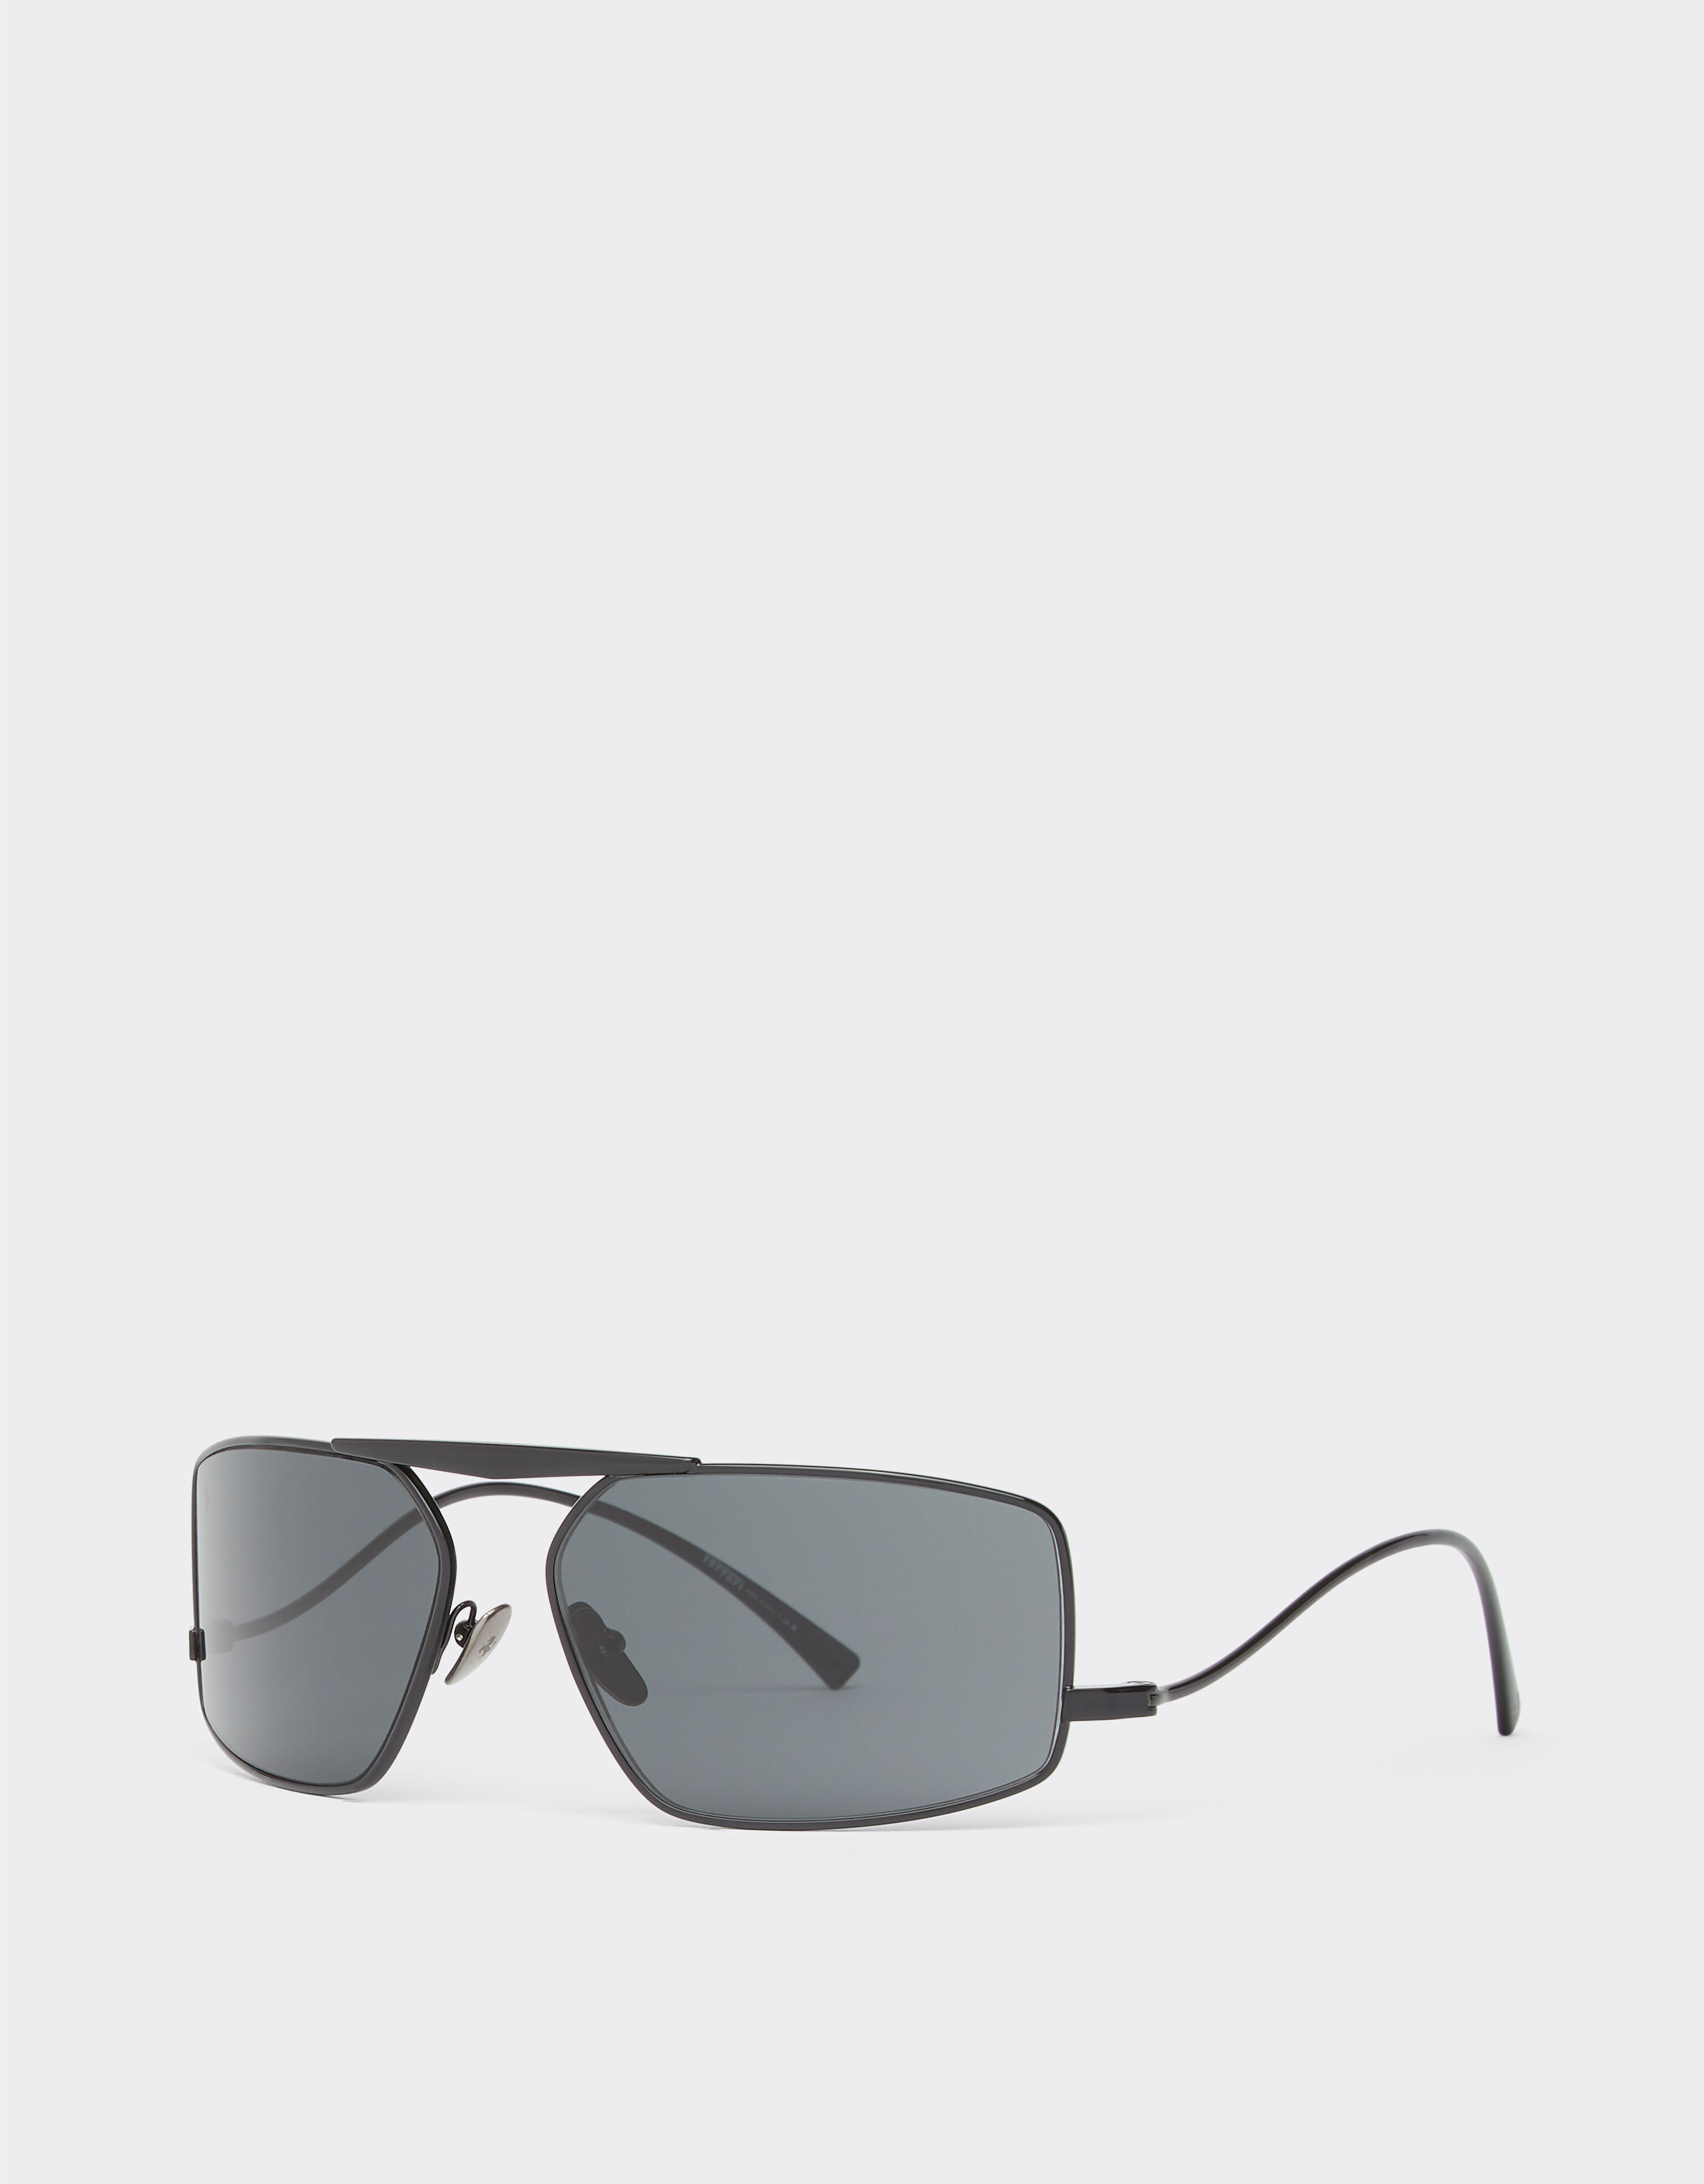 Ferrari Ferrari Sonnenbrille aus schwarzem Metall mit grauen Gläsern Schwarz F1211f